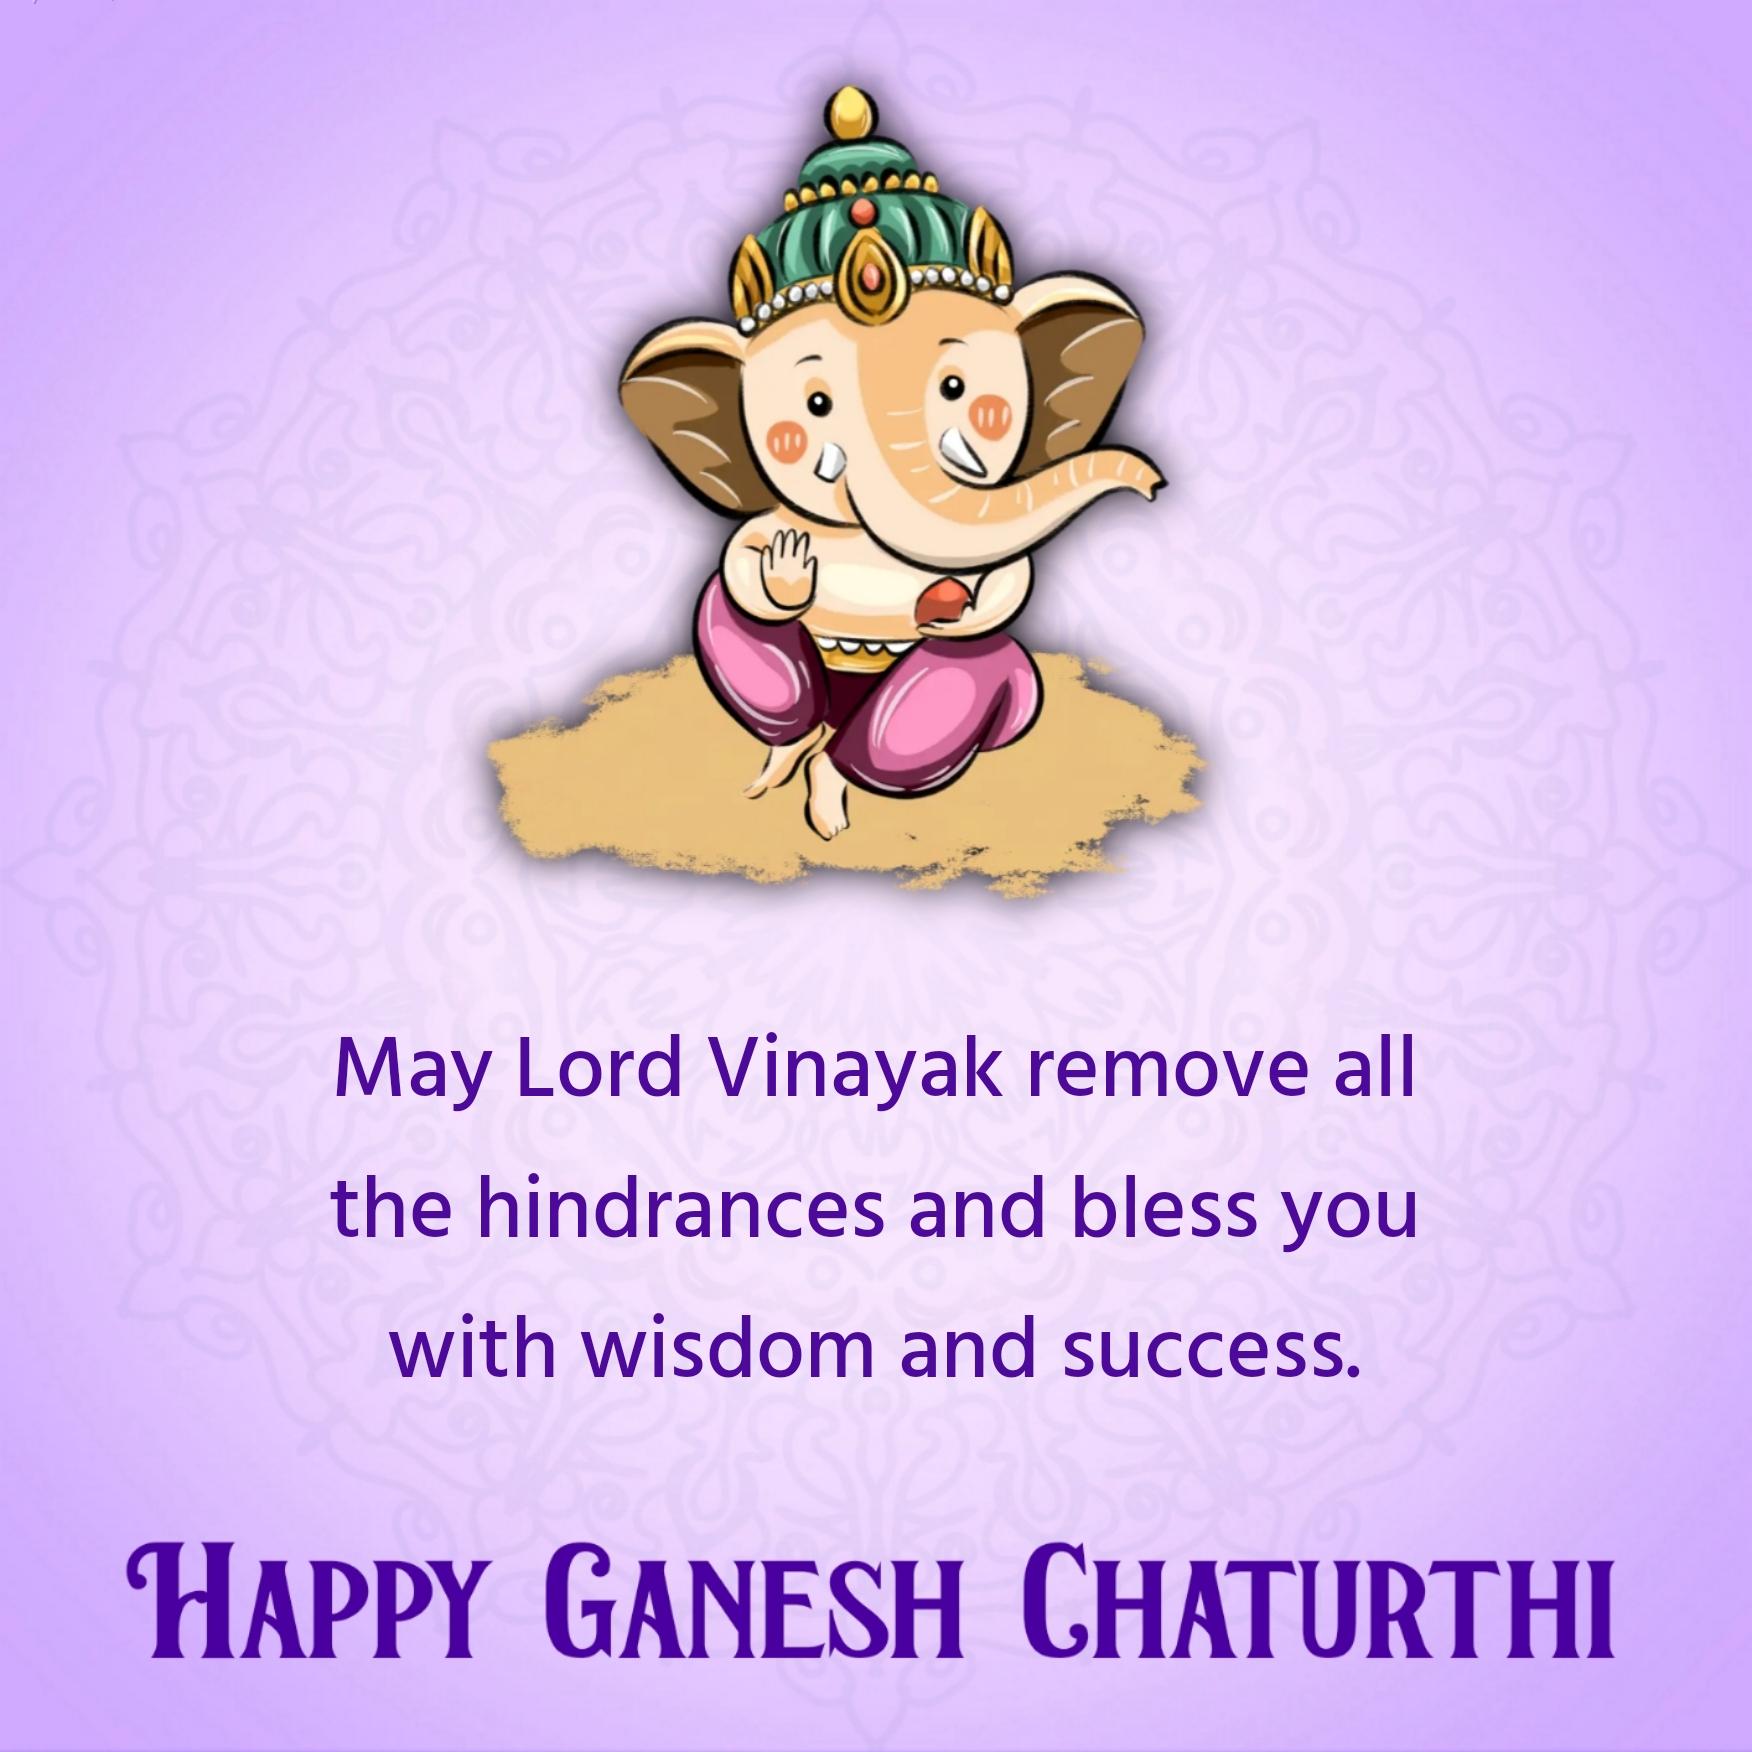 May Lord Vinayak remove all the hindrances